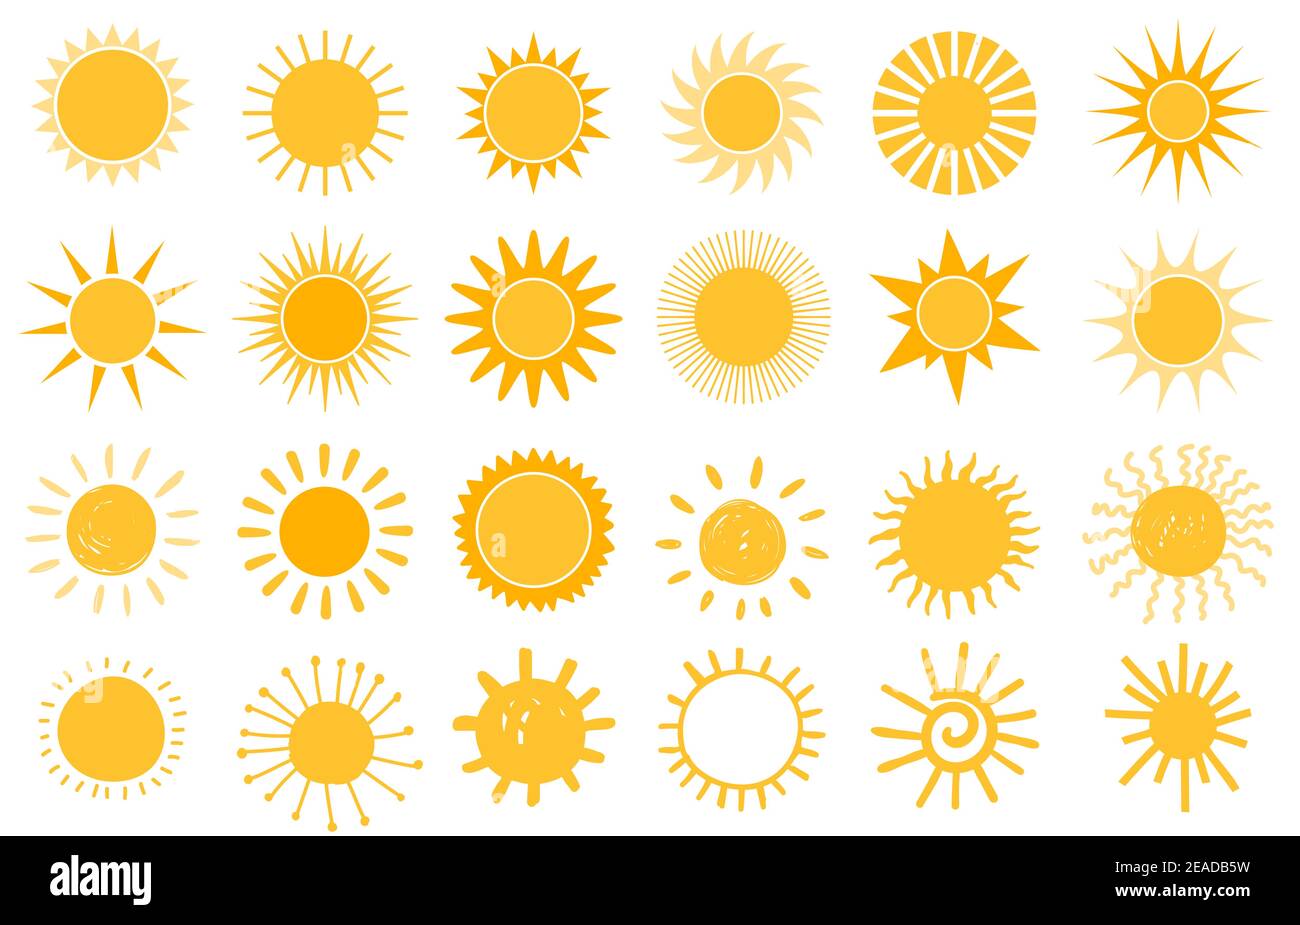 Cartoon-Sonnensymbol. Flache und handgezeichnete Sommer-Symbole. Logo in Sunshine-Form. Morgen Sonne Silhouetten und sonnigen Tag Wetter Elemente Vektor gesetzt Stock Vektor